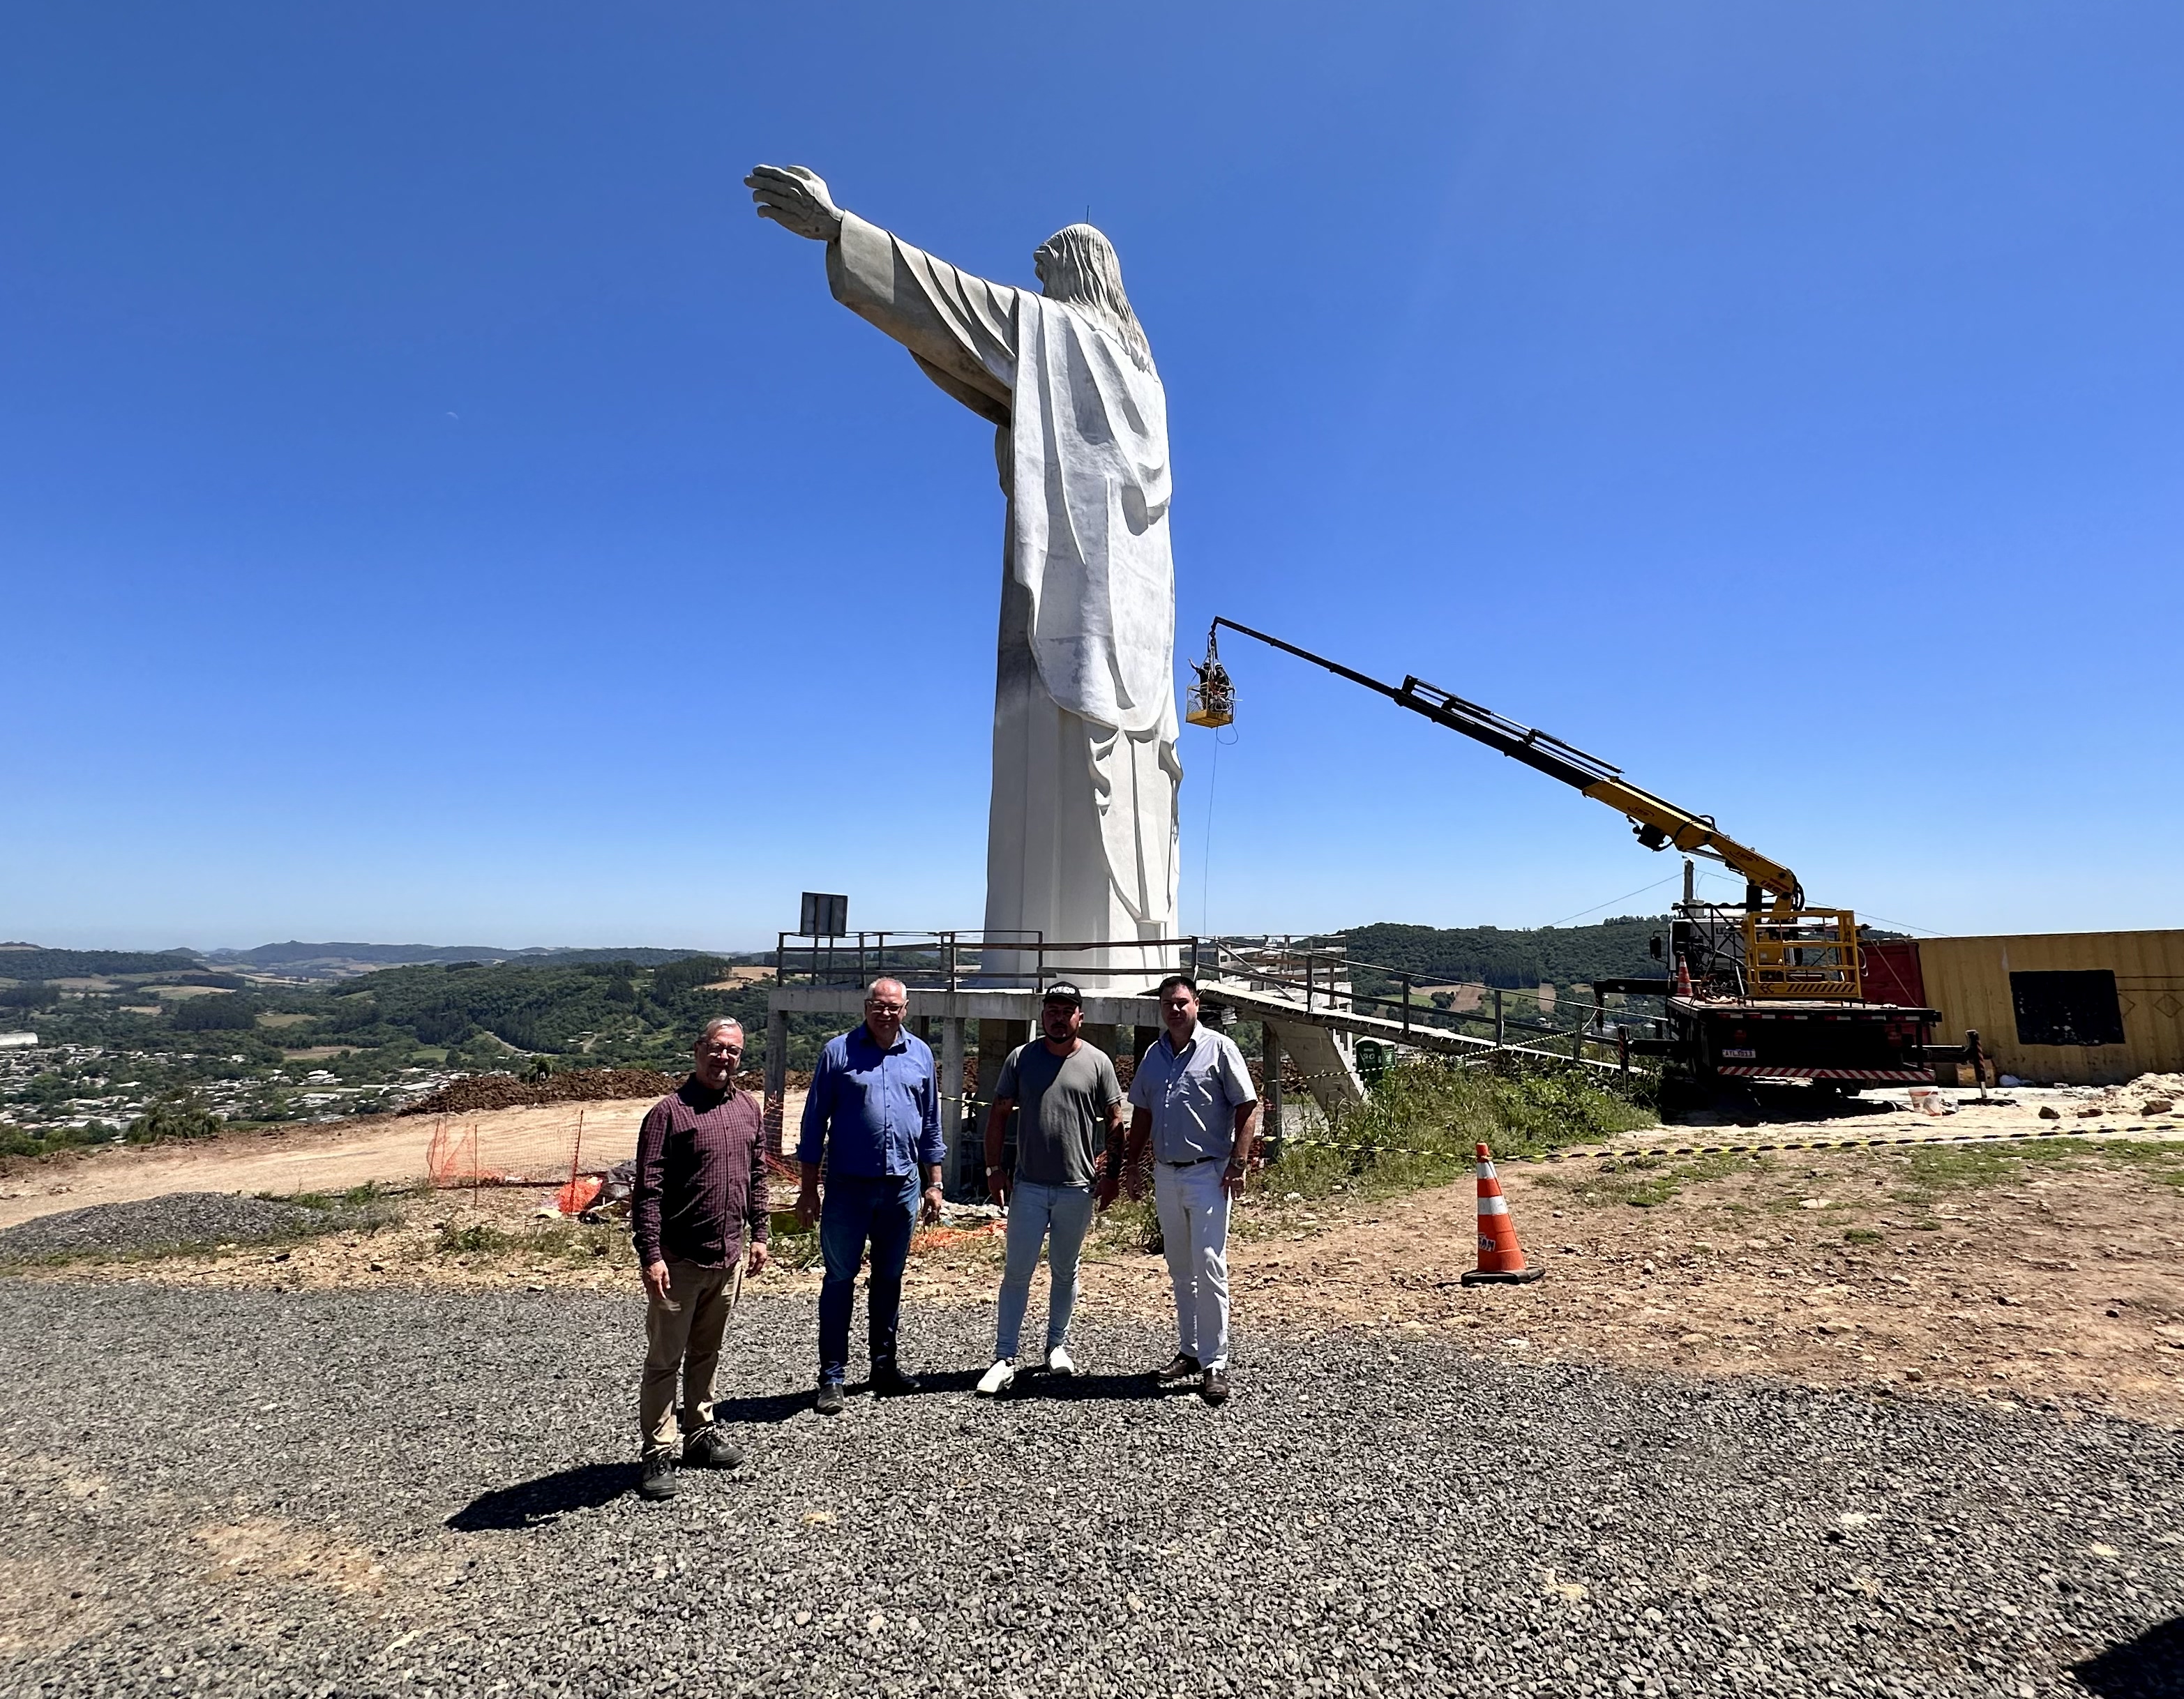 Sobradinho terá estátua de Cristo com 25 metros de altura - GAZ - Notícias  de Santa Cruz do Sul e Região